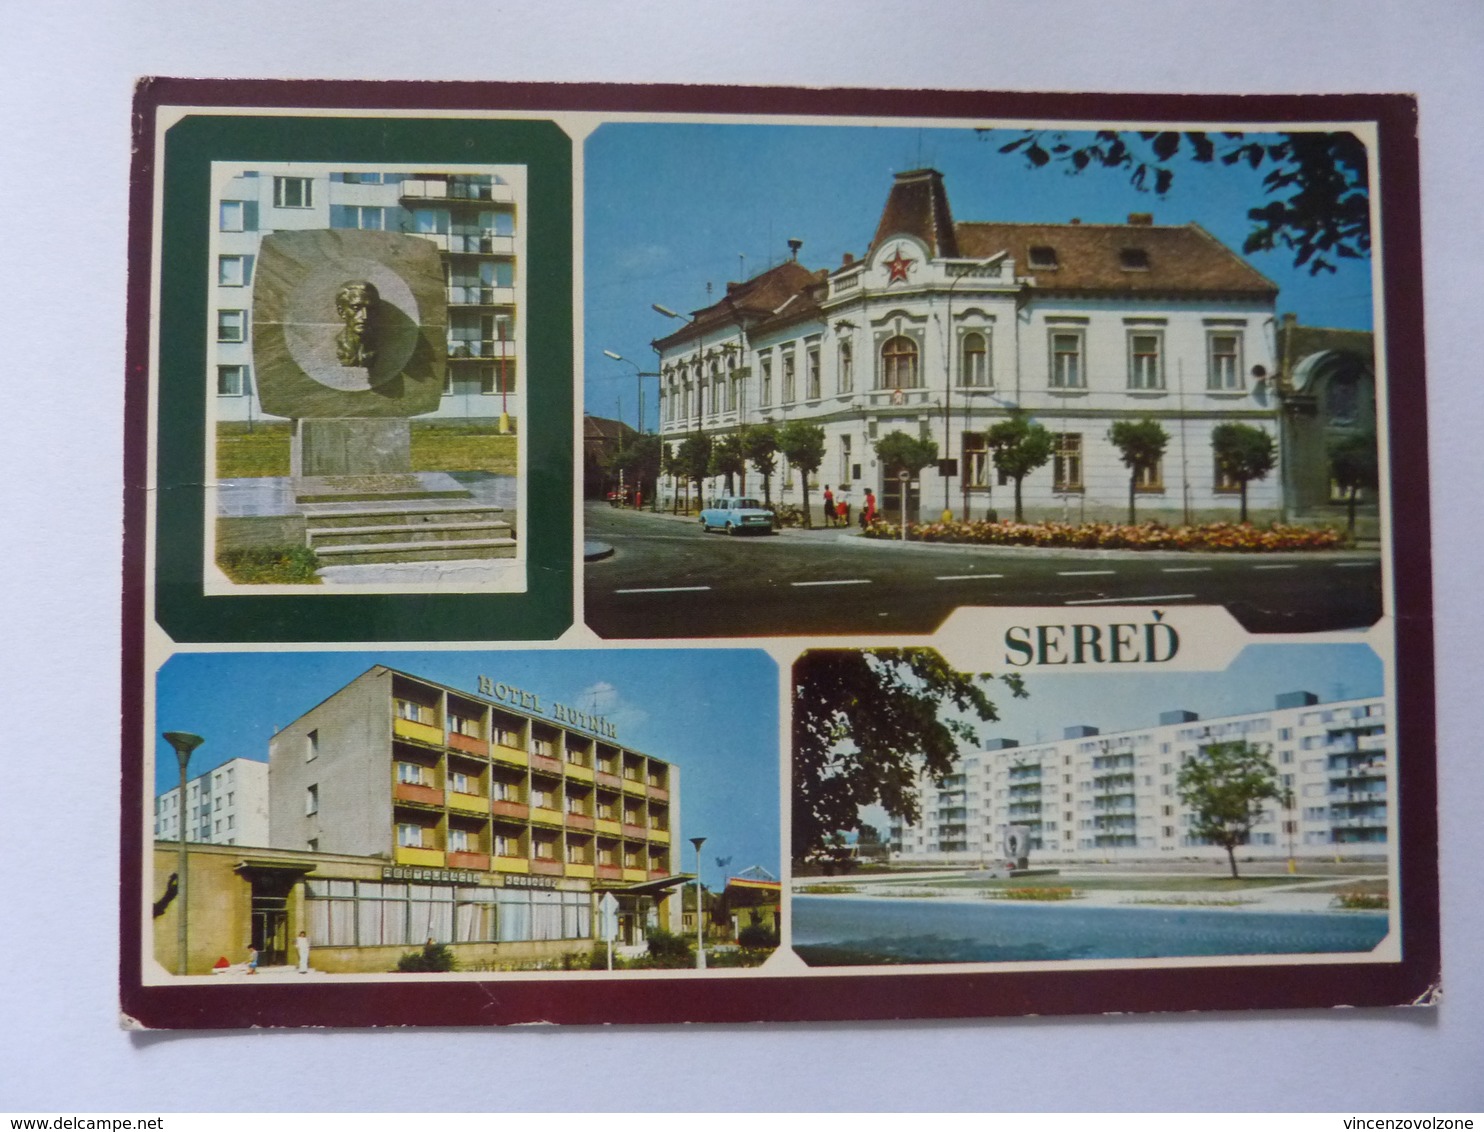 Cartolina Viaggiata "SERED" 1980 - Repubblica Ceca